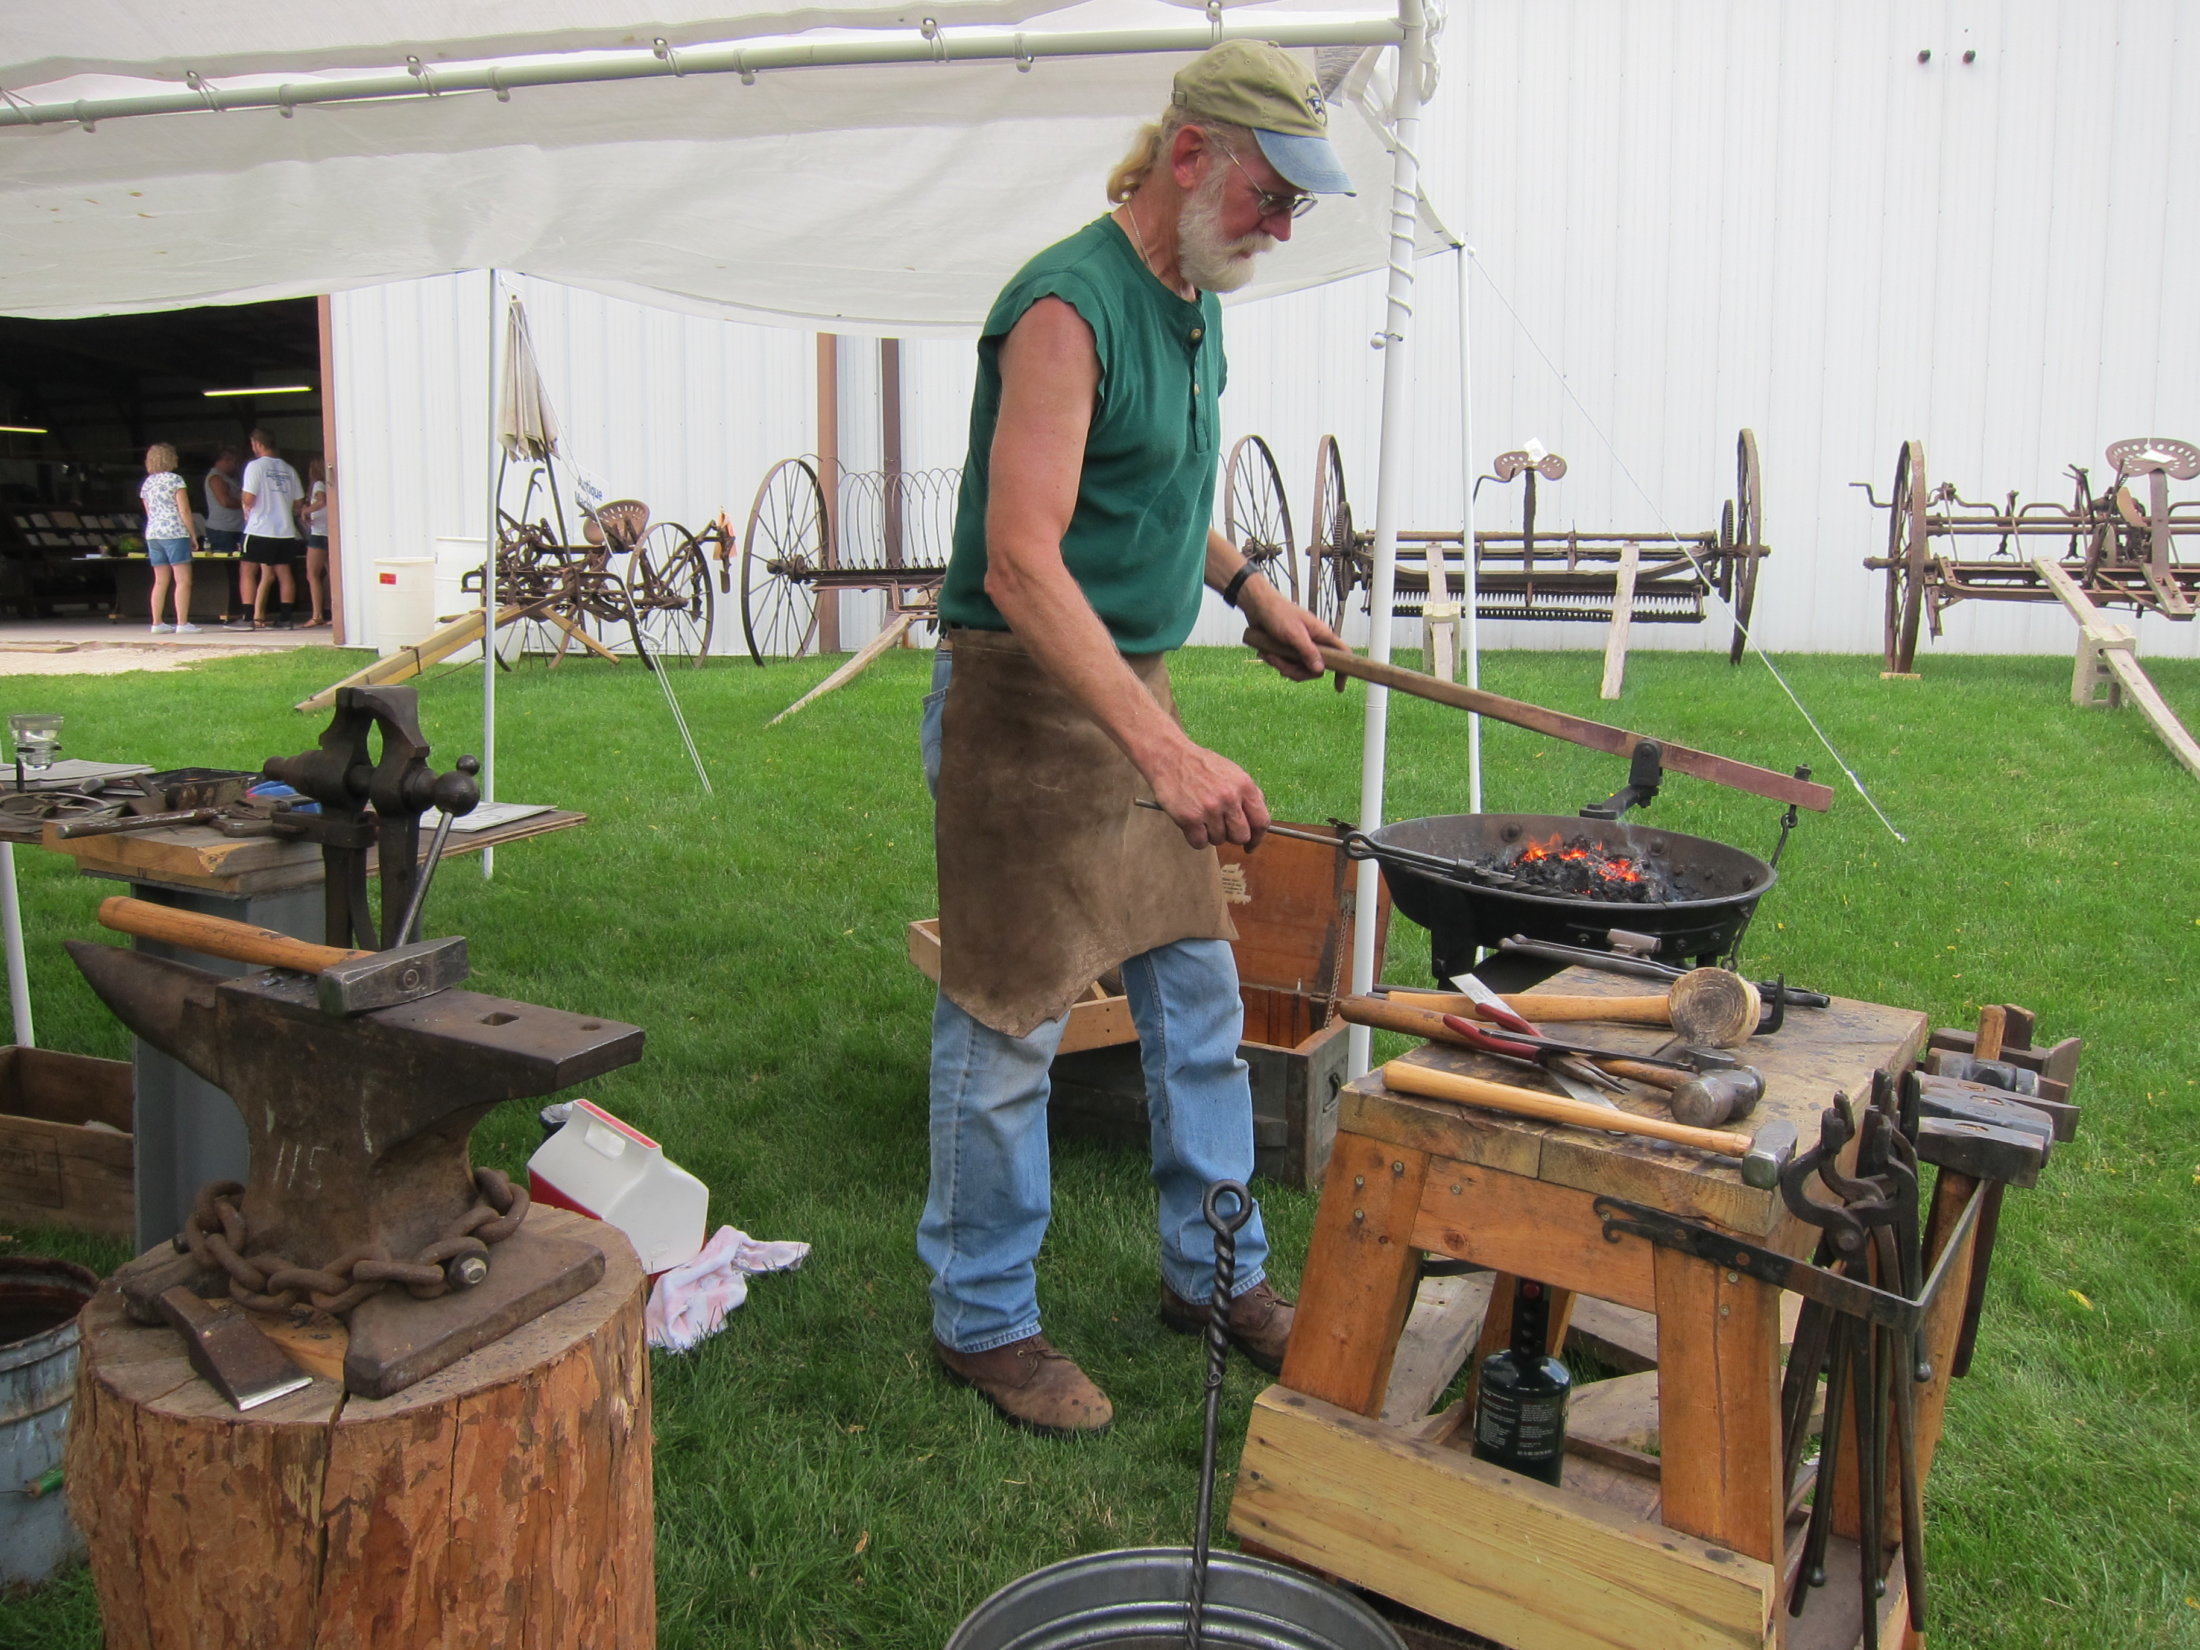 Gary Blankenheim demonstrates the Art of Blacksmithing